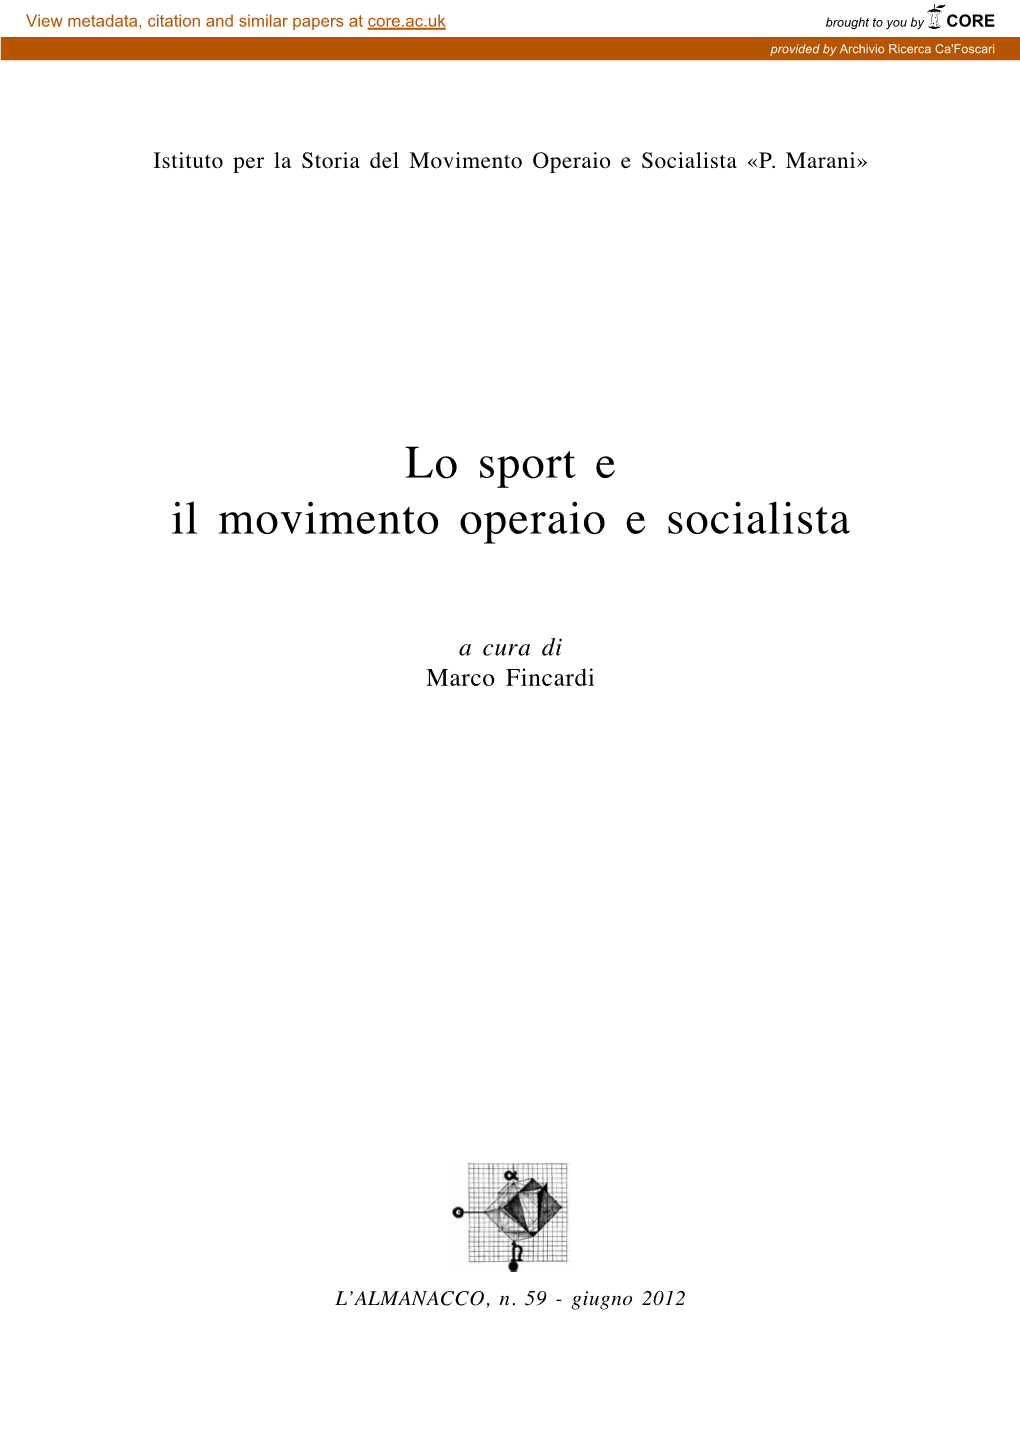 Lo Sport E Il Movimento Operaio E Socialista